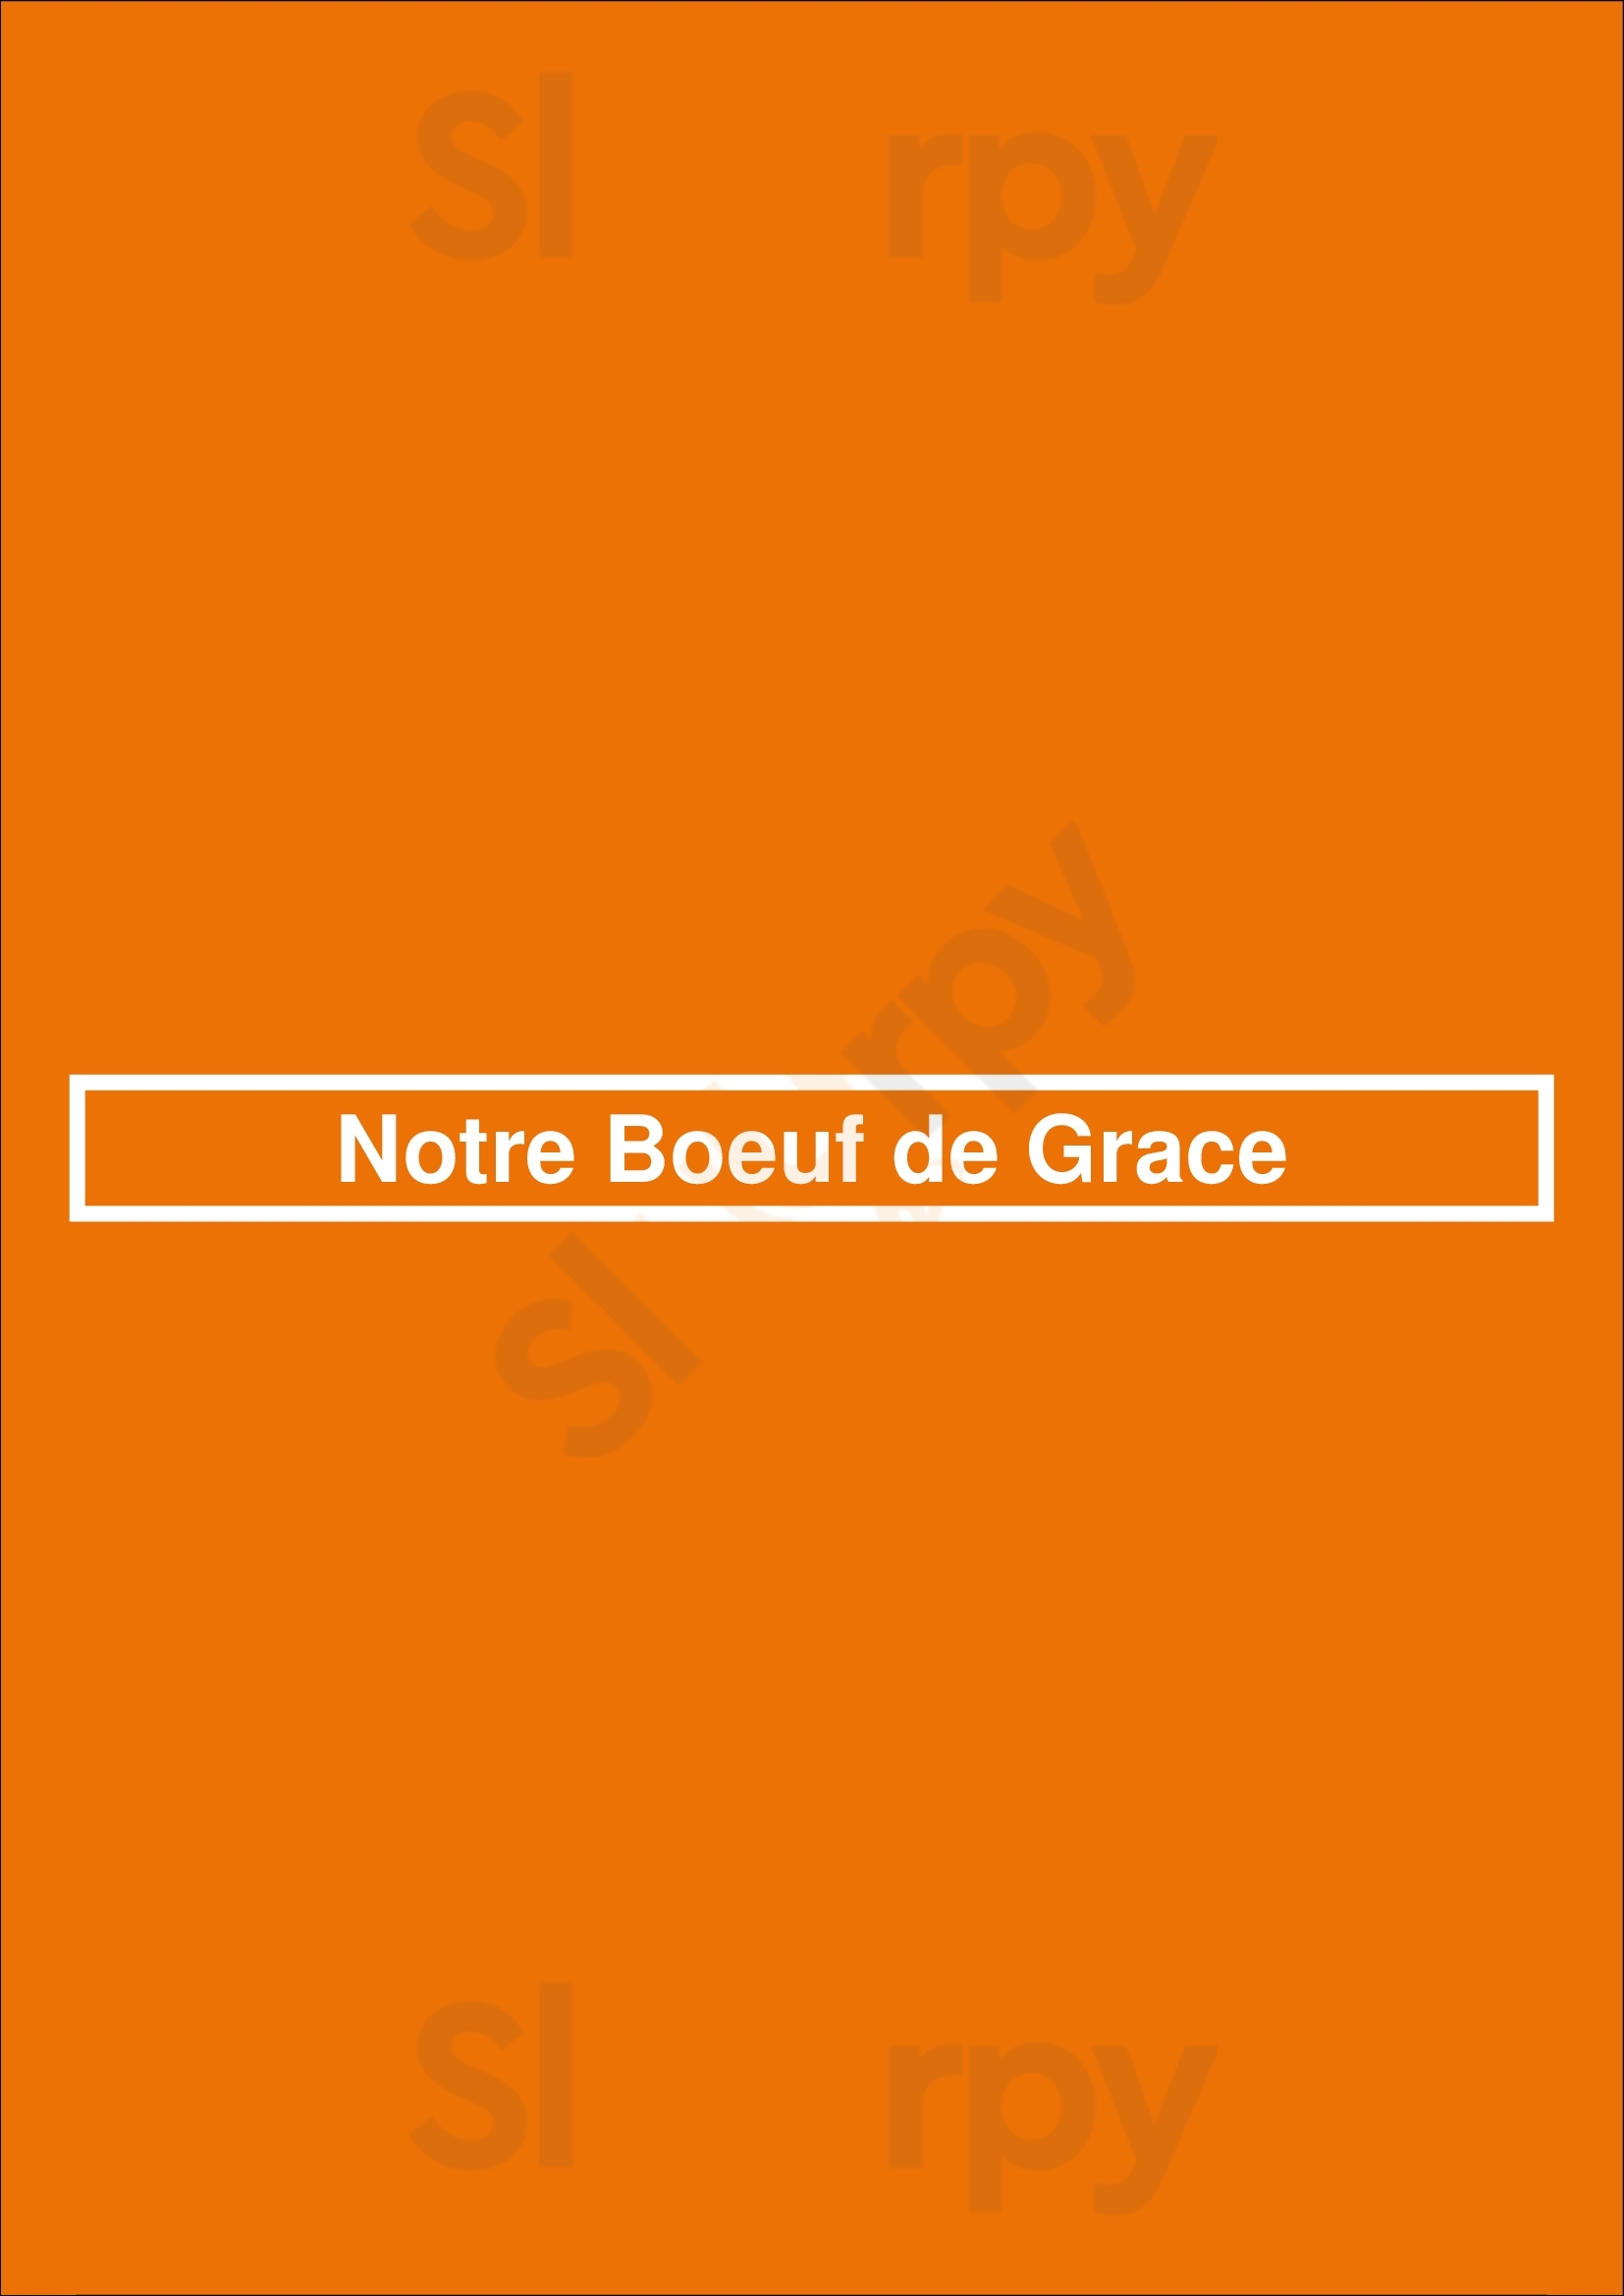 Notre Boeuf De Grace Montreal Menu - 1